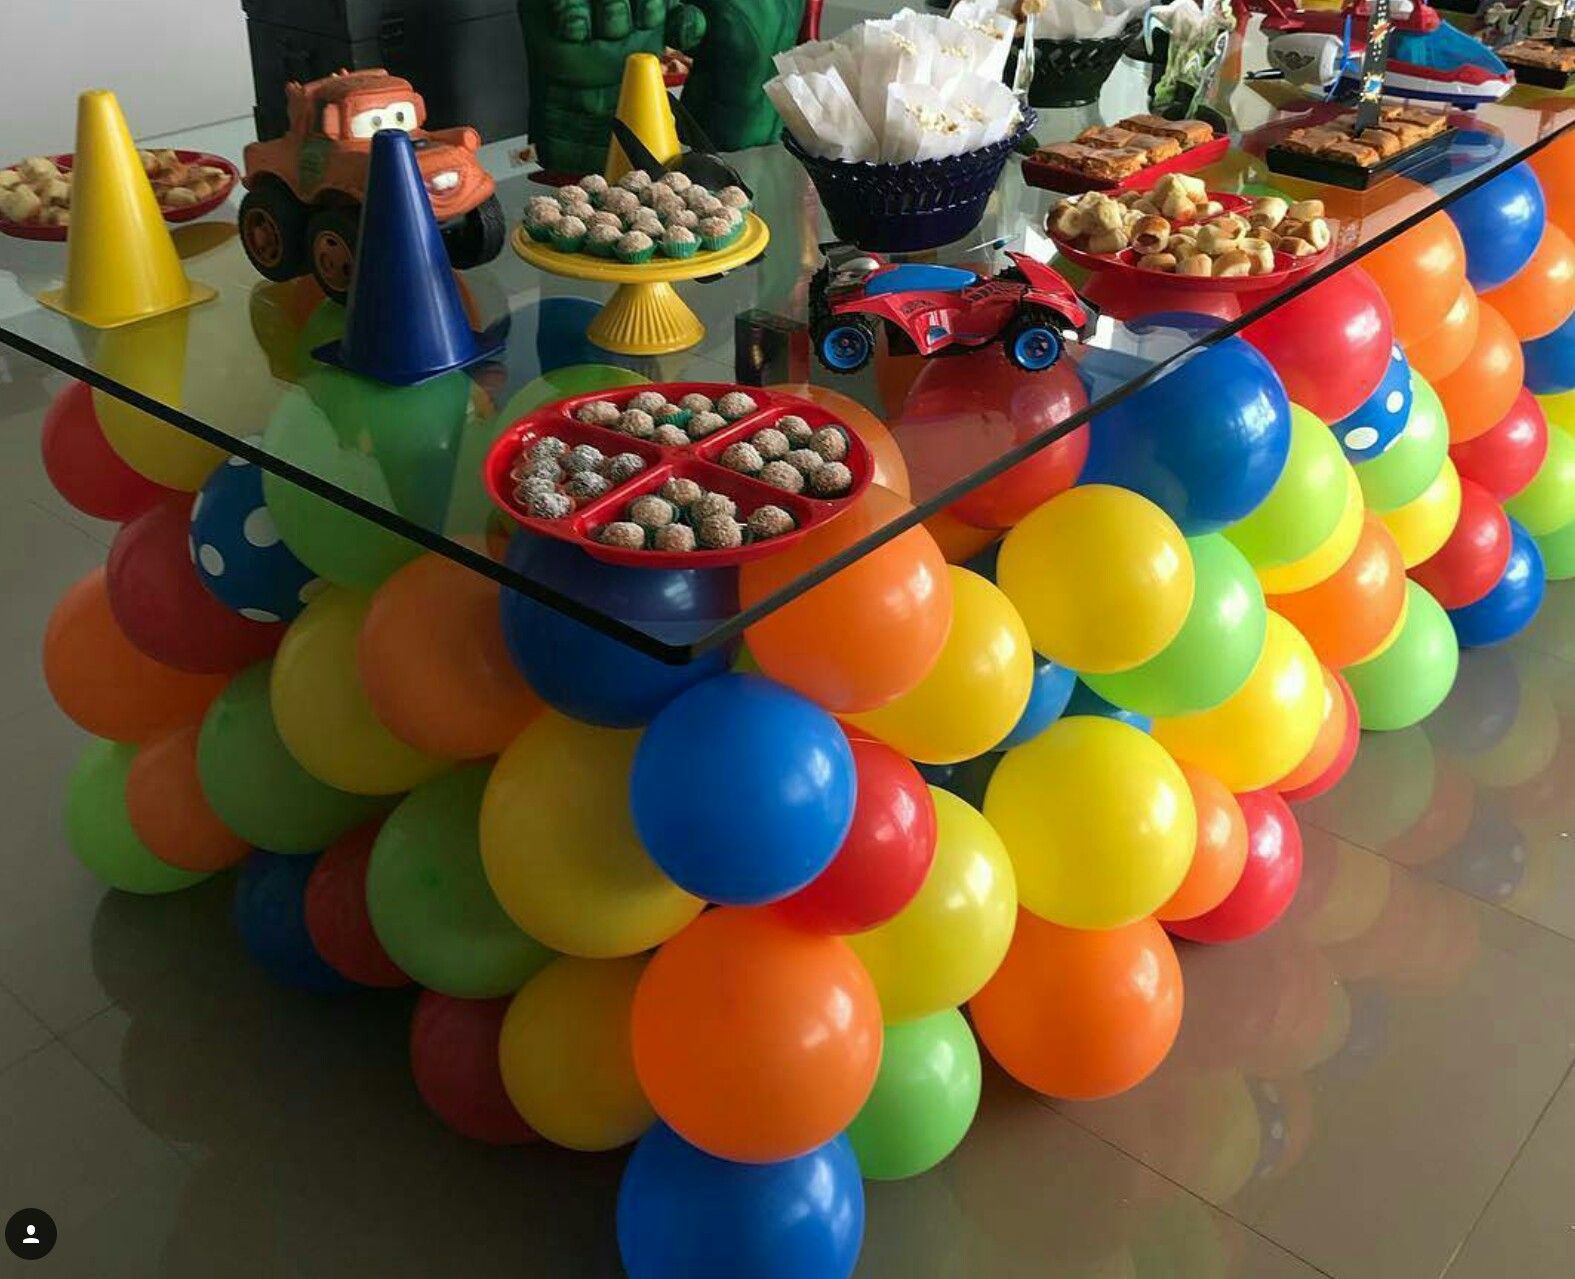 украсить детский стол на день рождения